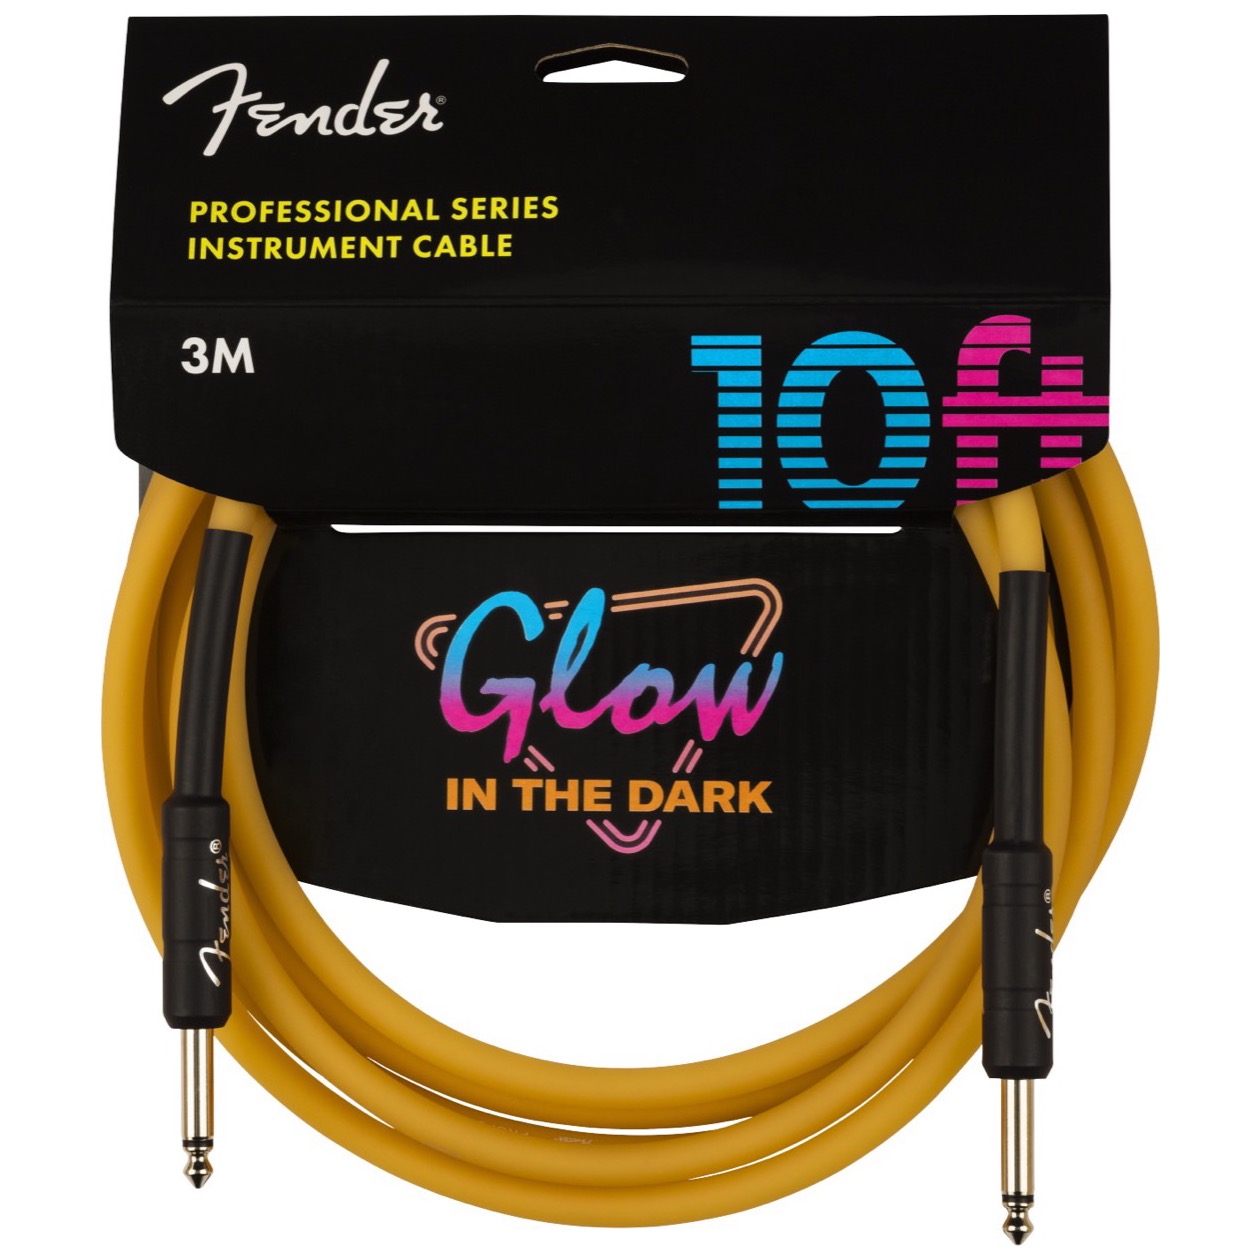 Fender Professional Series Glow in the Dark Instrument Kabel 3 meter Orange Jack - Jack